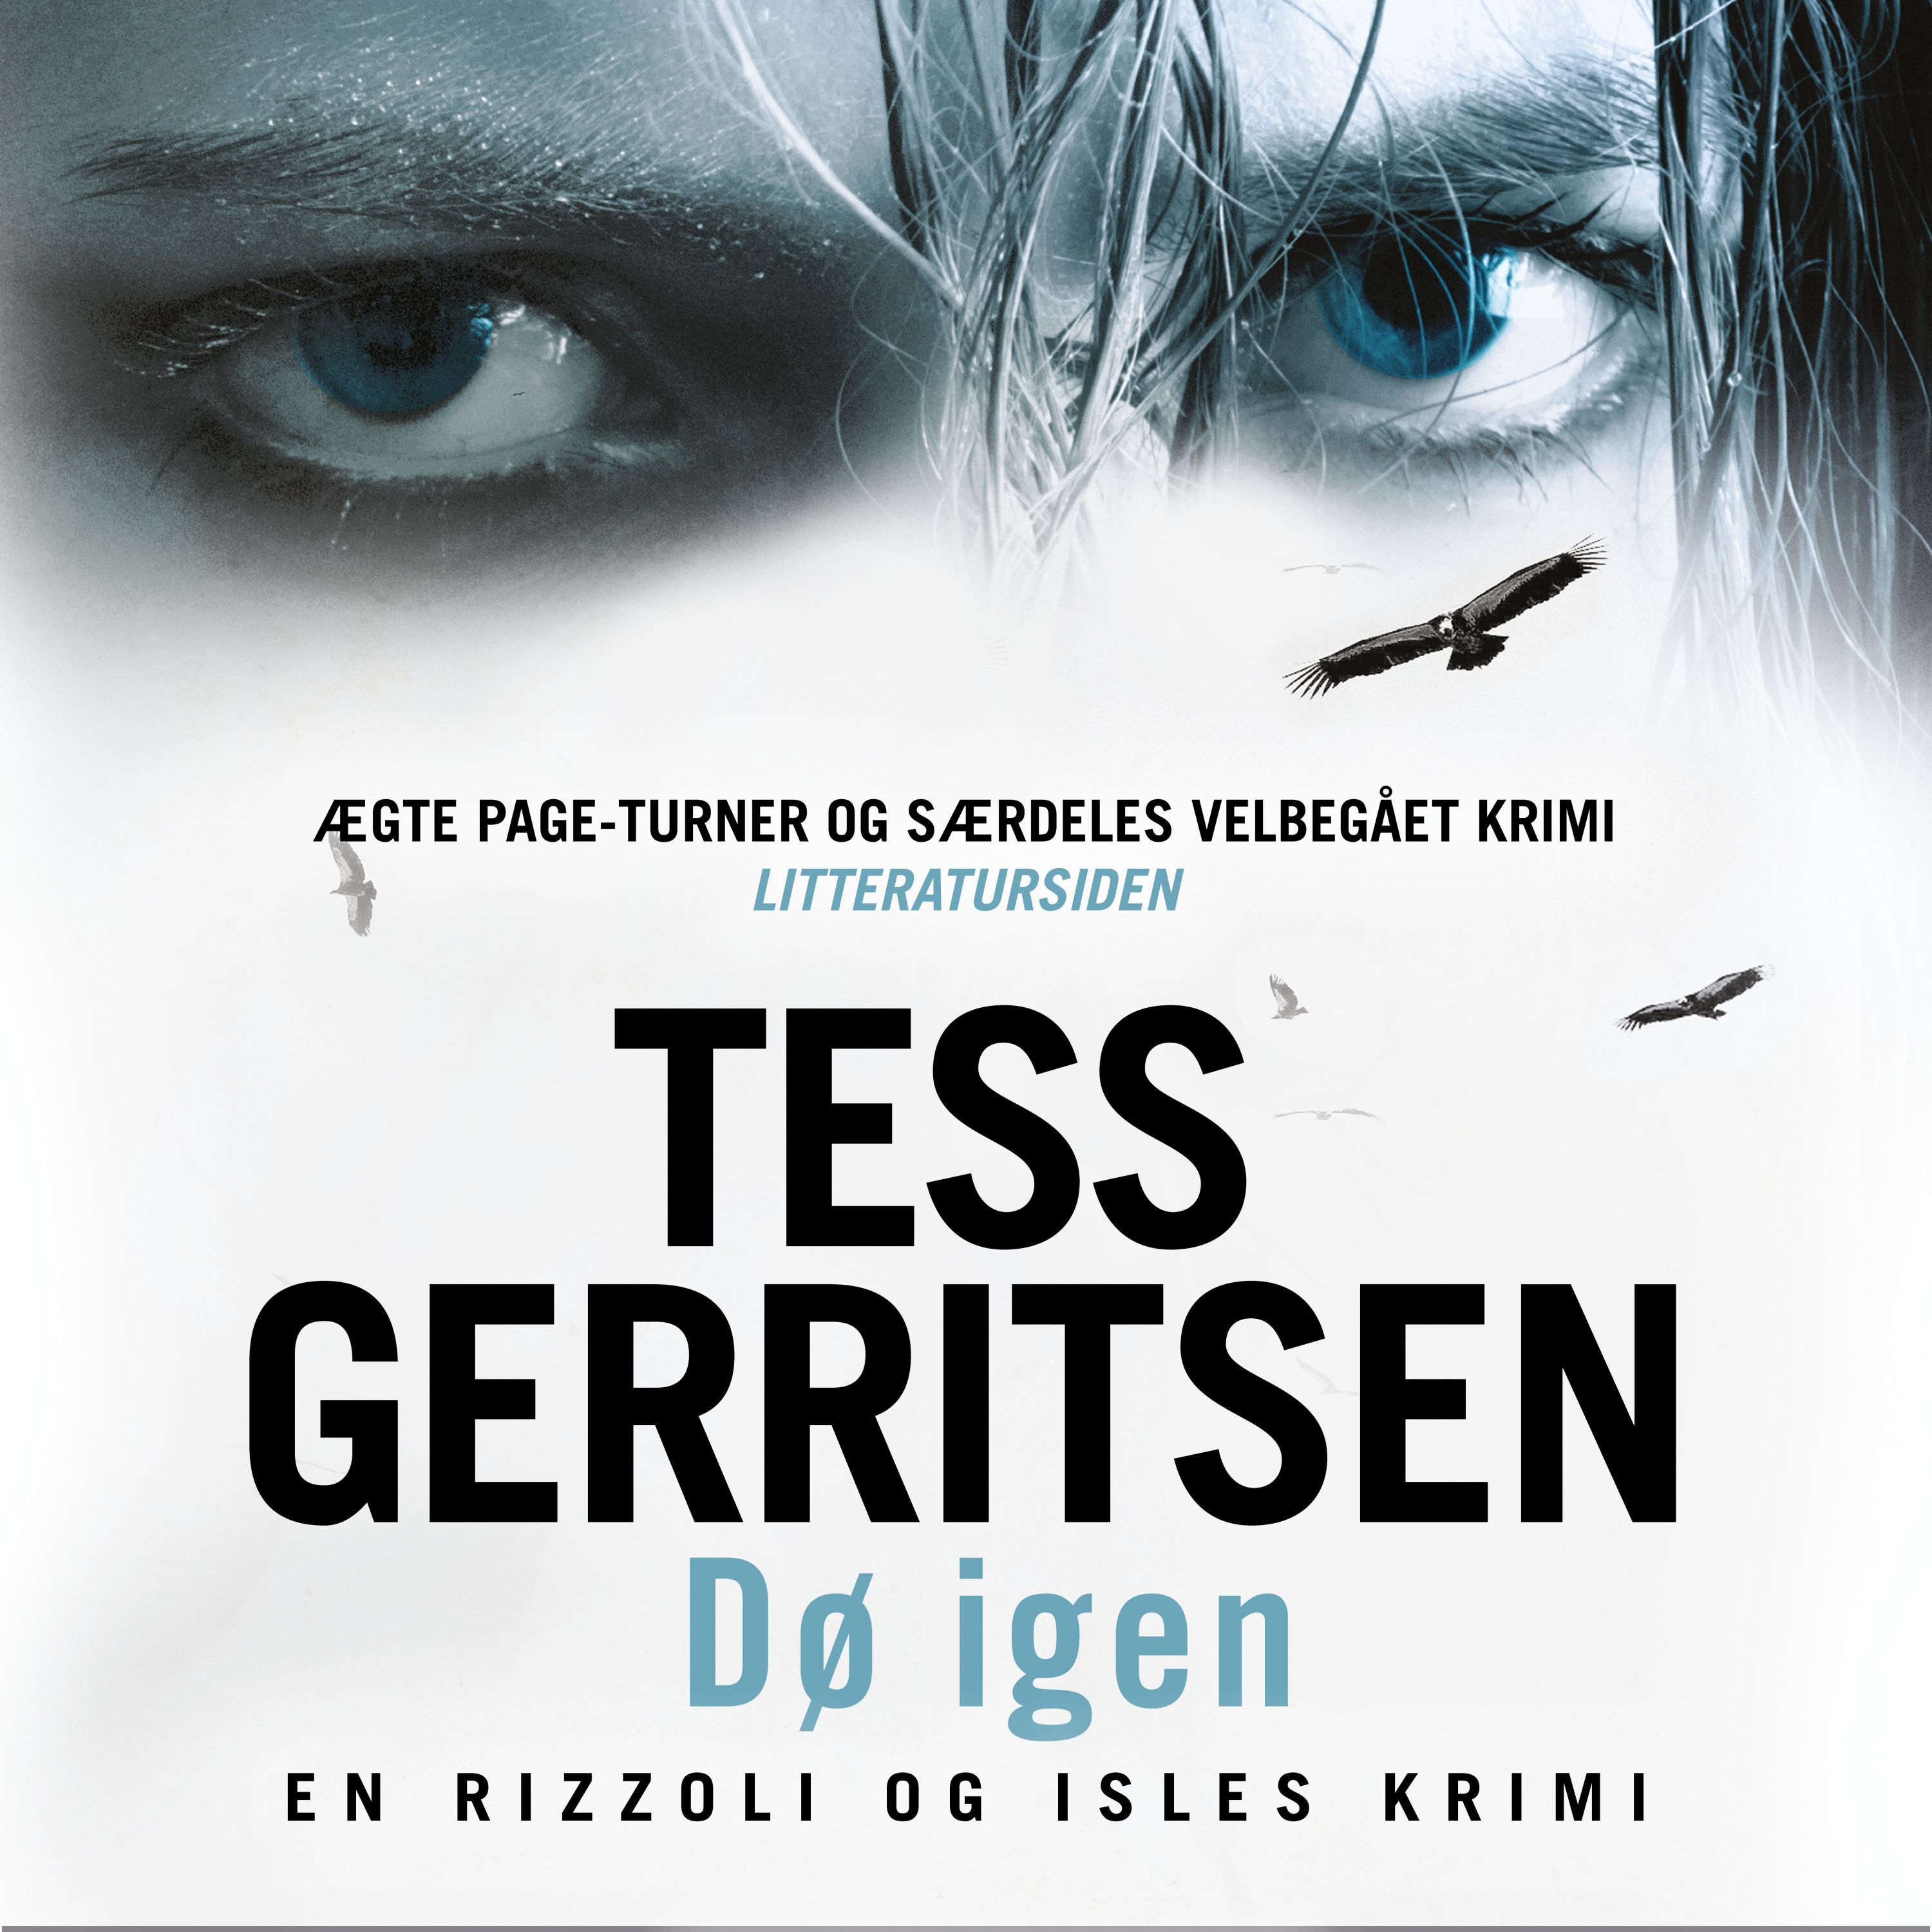 Dø igen, ljudbok av Tess Gerritsen